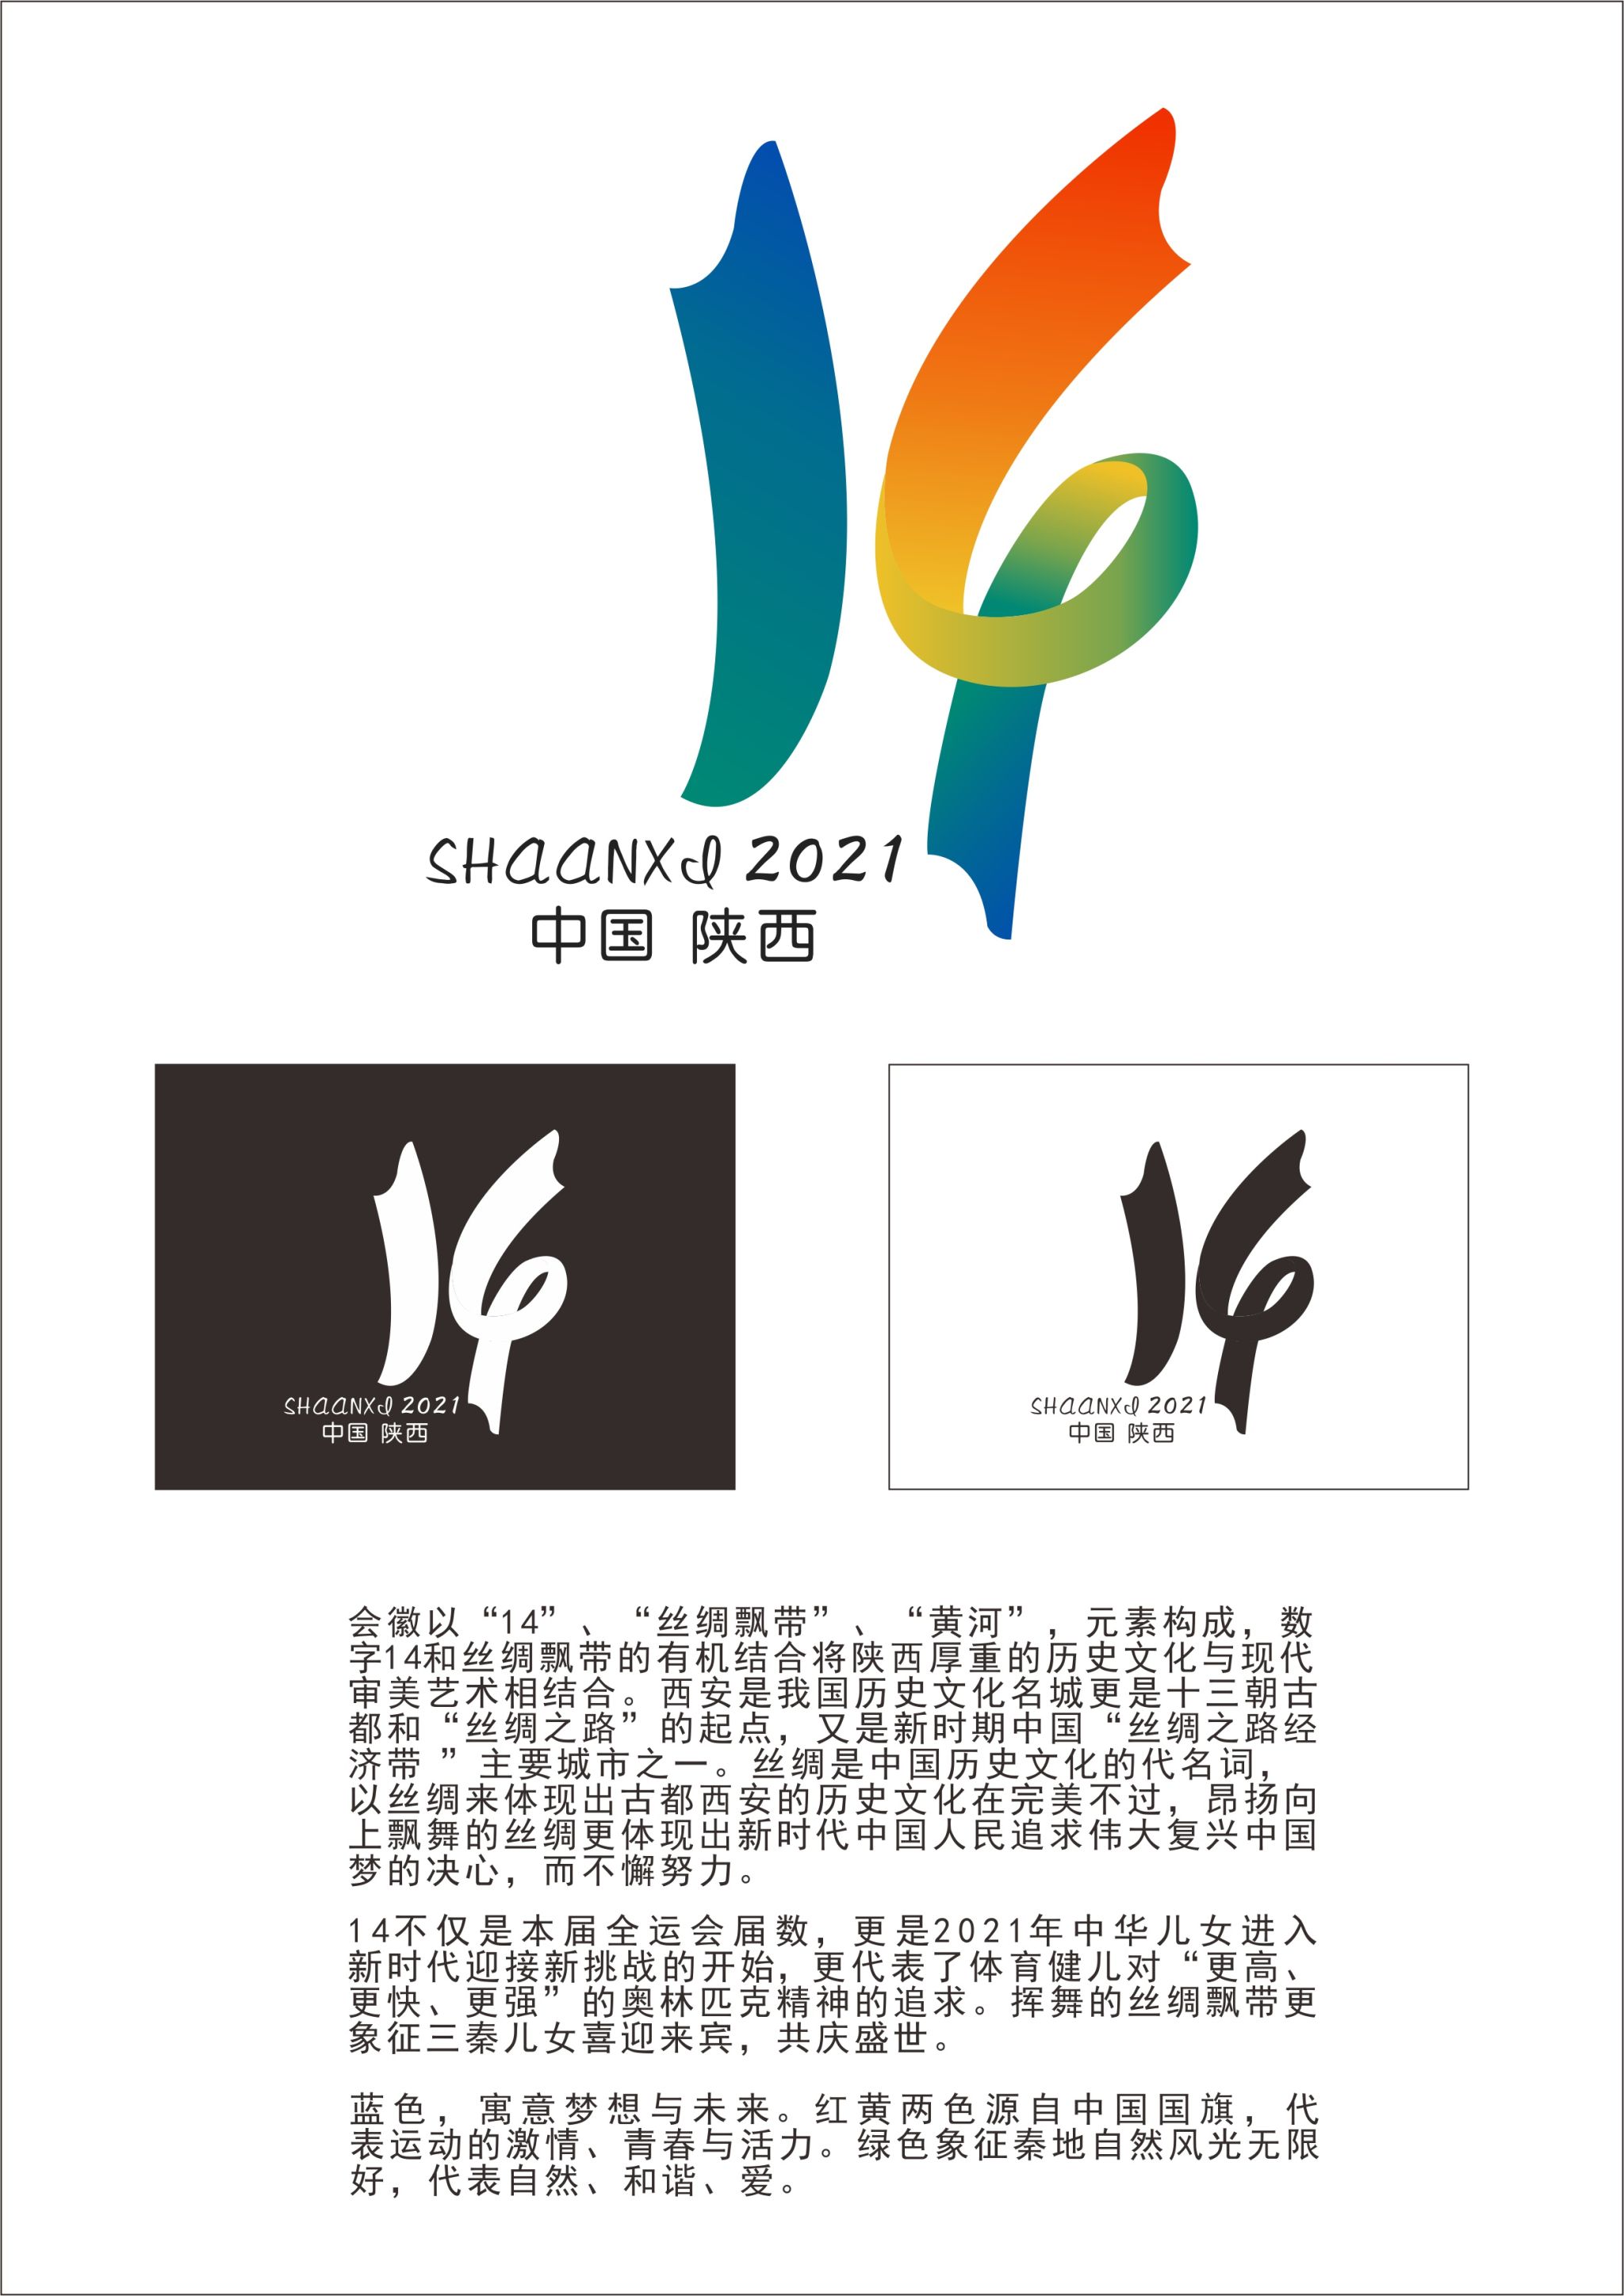 24届运动会logo设计图片